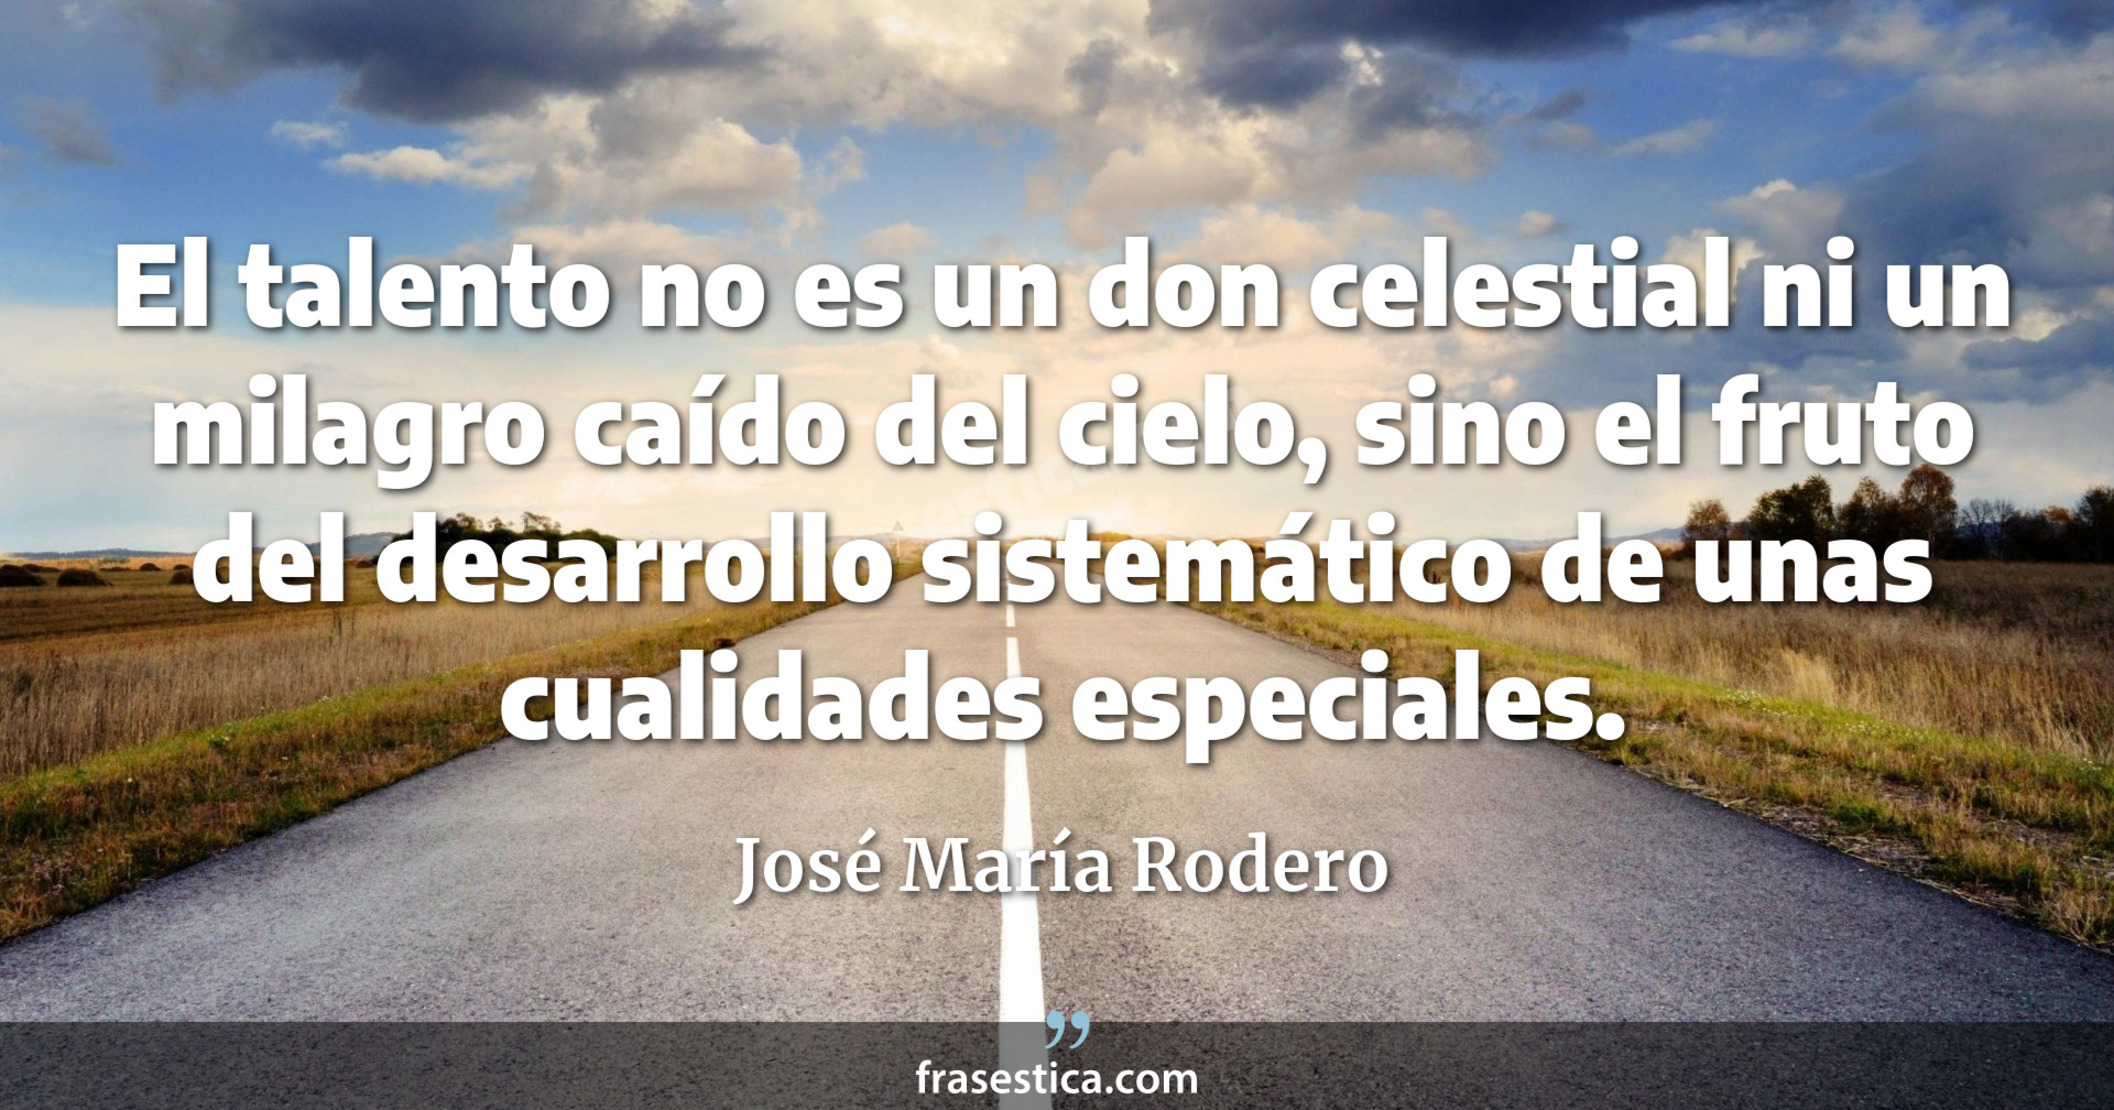 El talento no es un don celestial ni un milagro caído del cielo, sino el fruto del desarrollo sistemático  de unas cualidades especiales. - José María Rodero